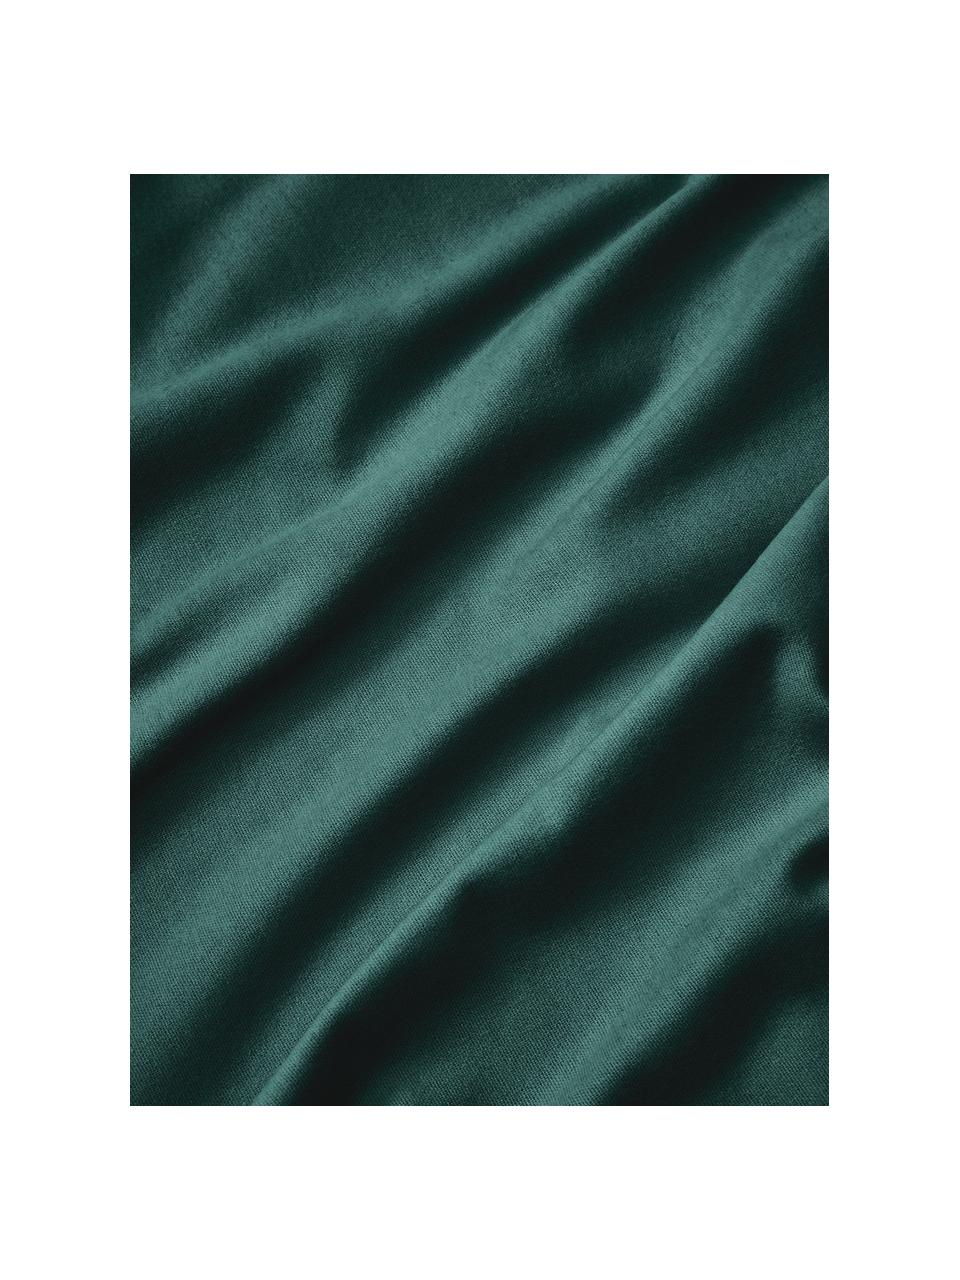 Poszwa na kołdrę z flaneli Biba, Ciemny zielony, S 135 x D 200 cm